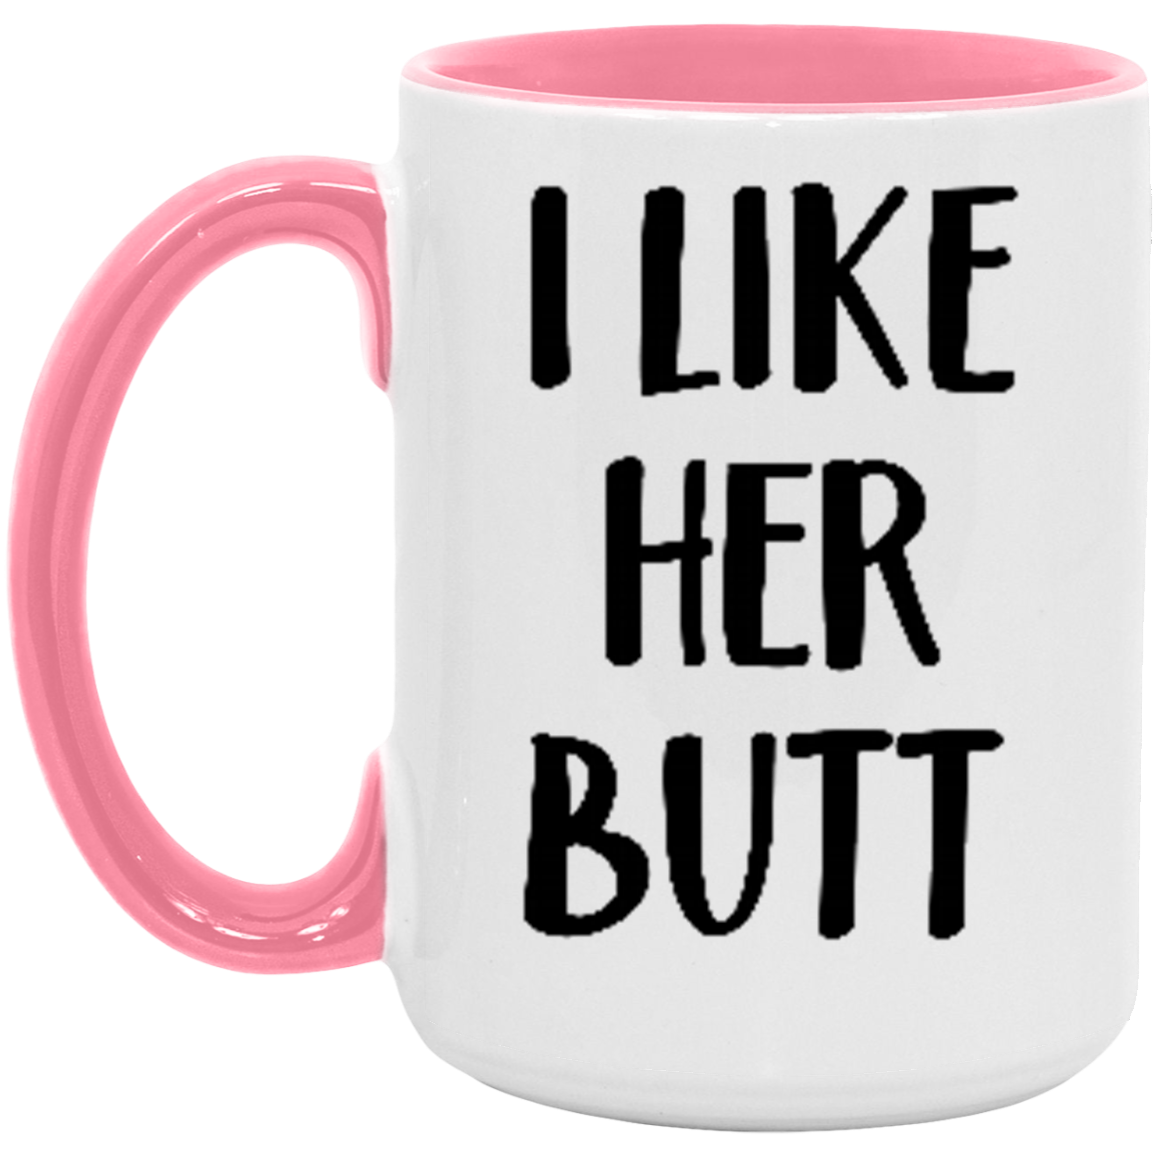 I Like Her Butt Coffee Mug